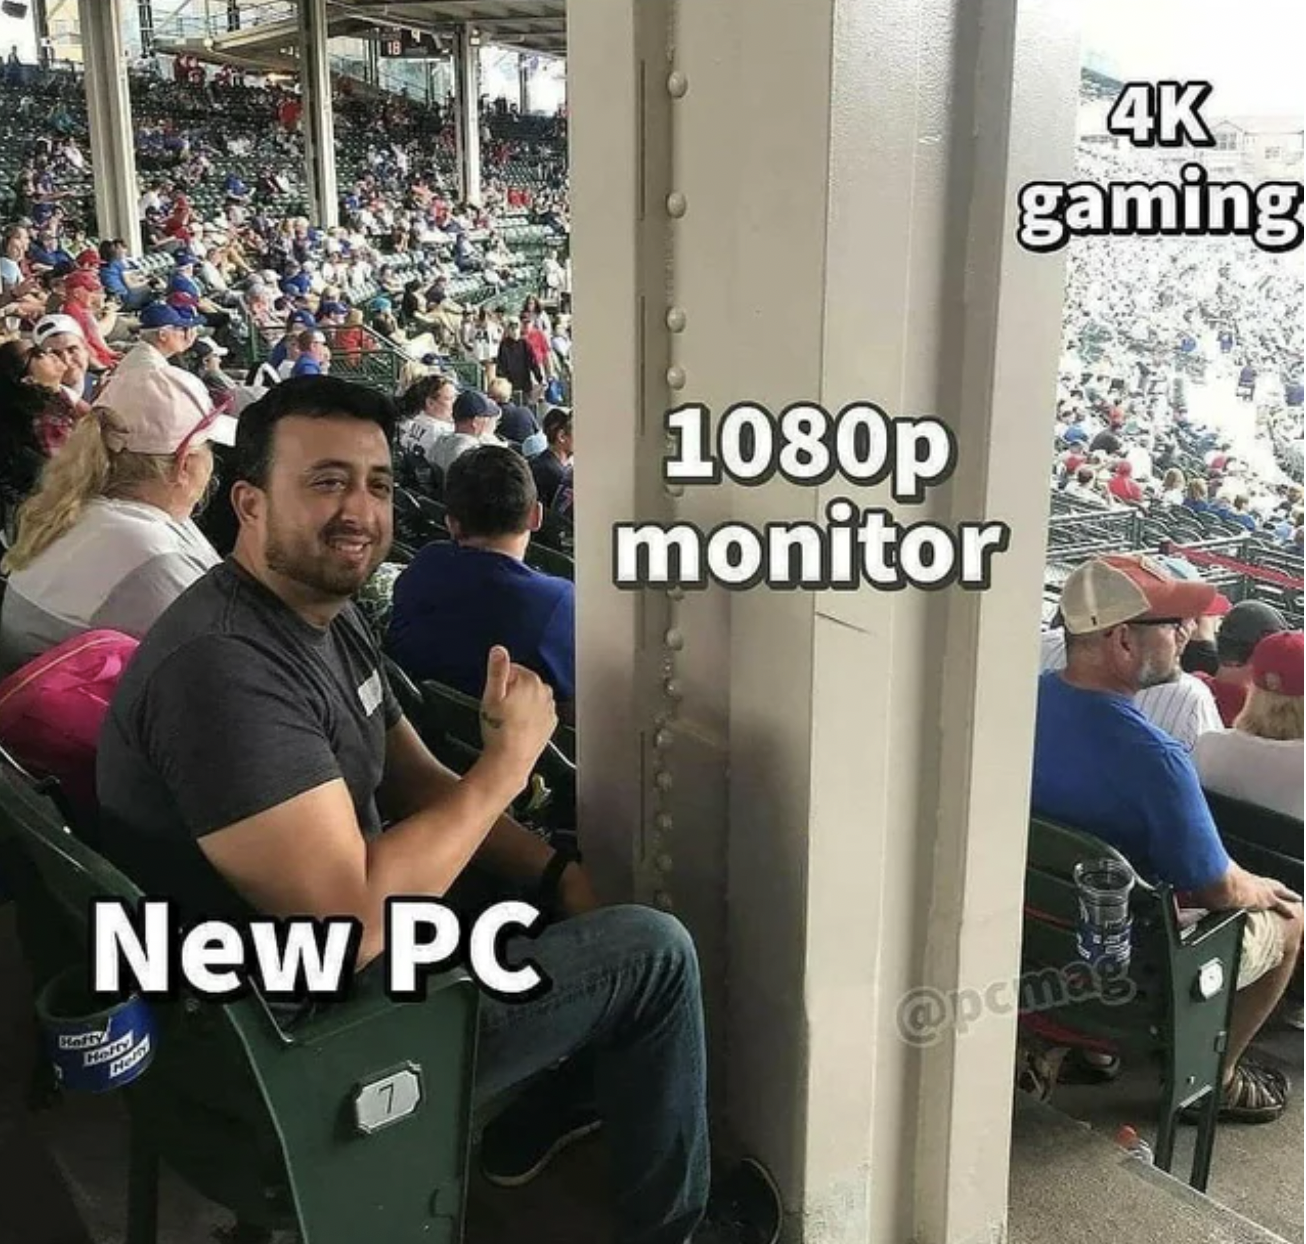 PC Gaming Memes - funny construction fails - New Pc Samy 1080p monitor 4K gaming ng ny